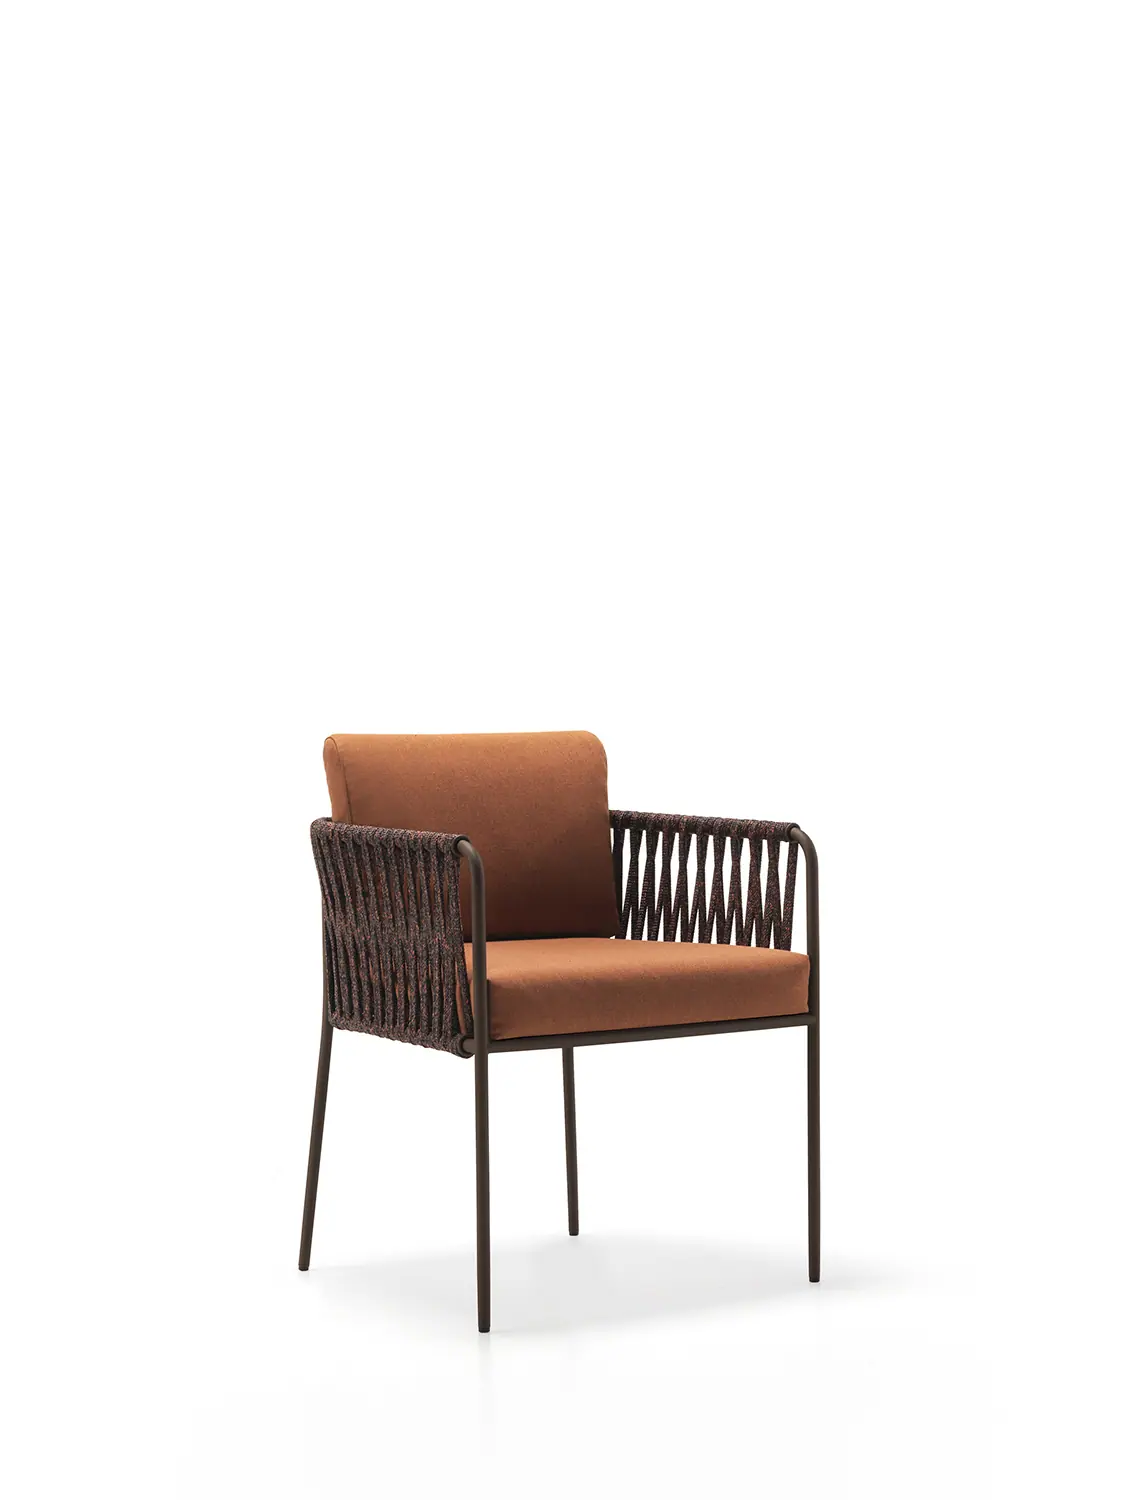 35938-15450-nido-seating-collection